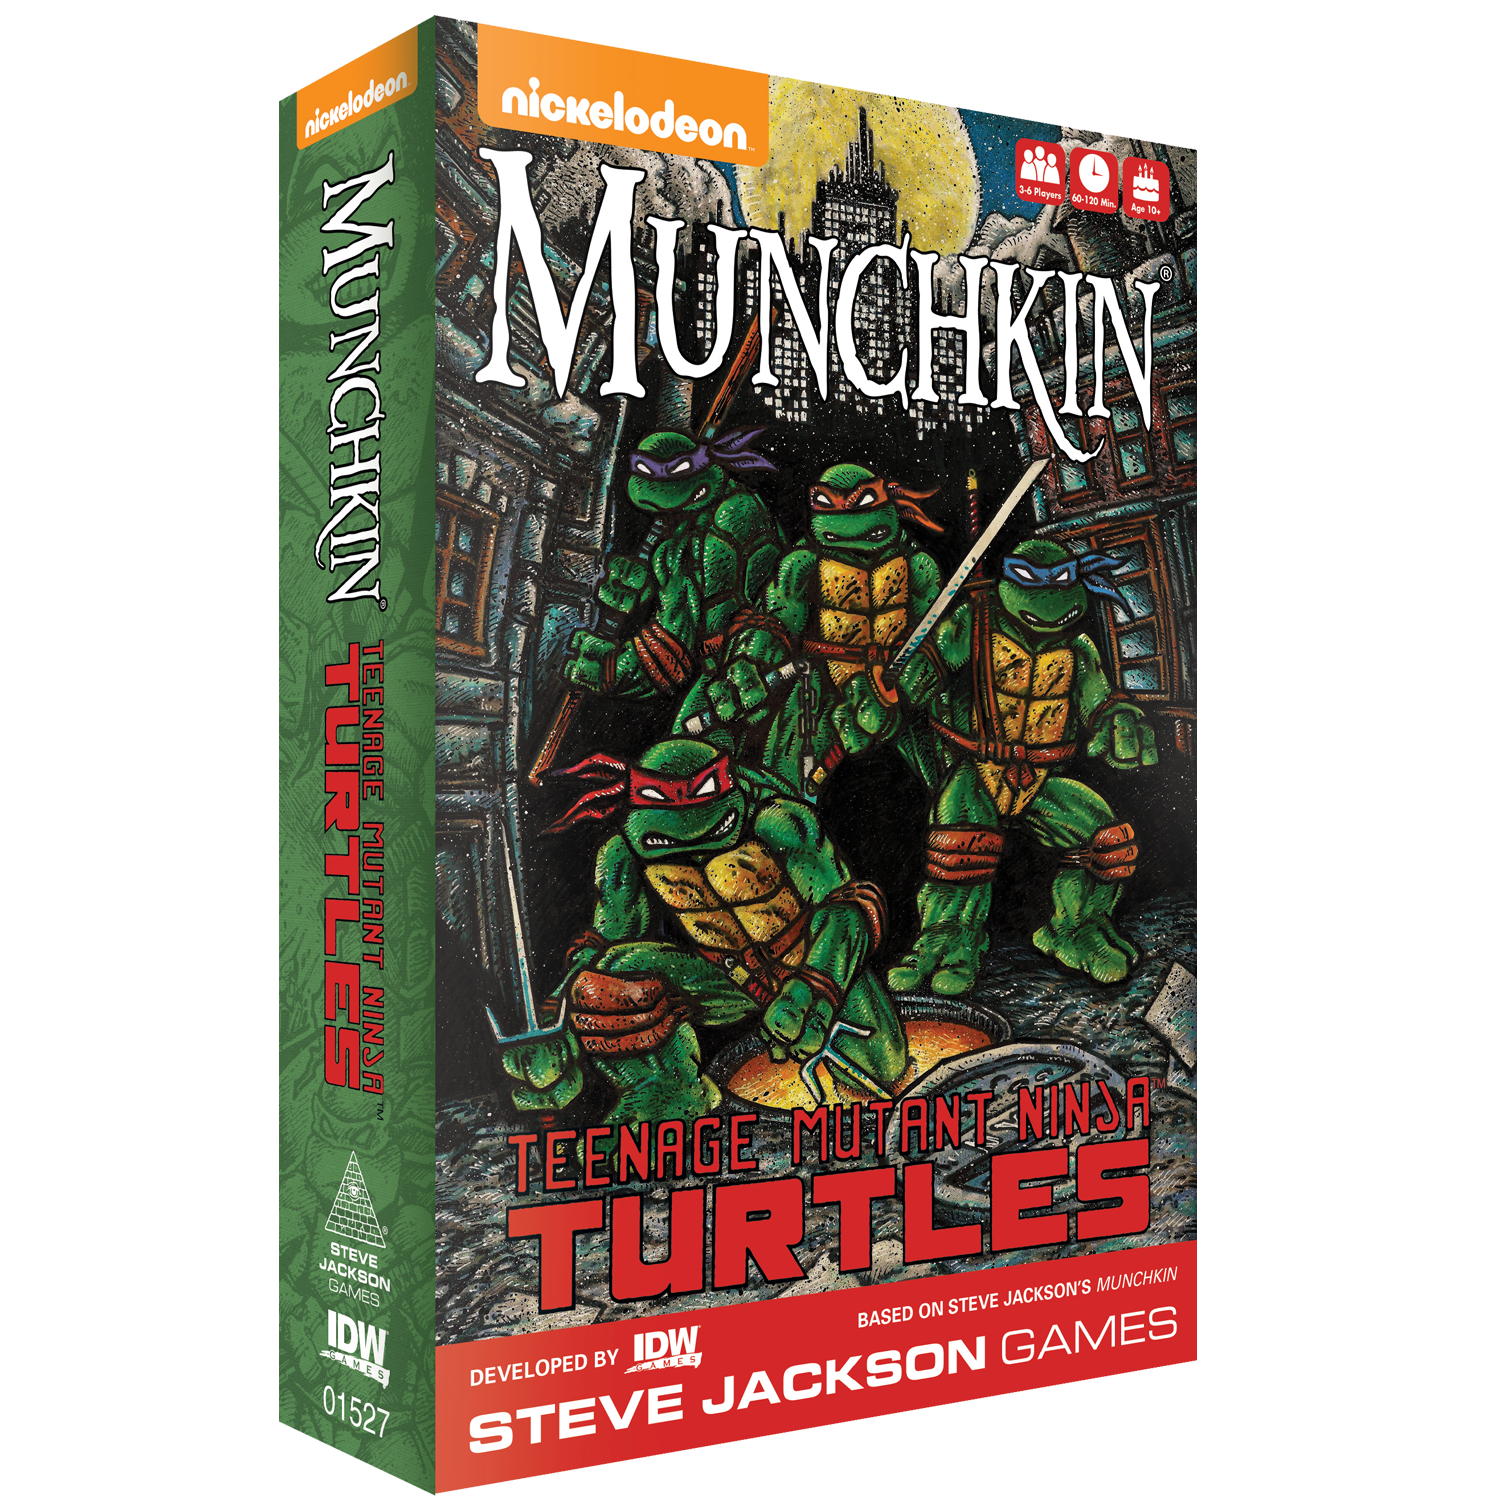 Munchkin Teenage Mutant Ninja Turtles Deluxe Board Game Steve Jackson Games